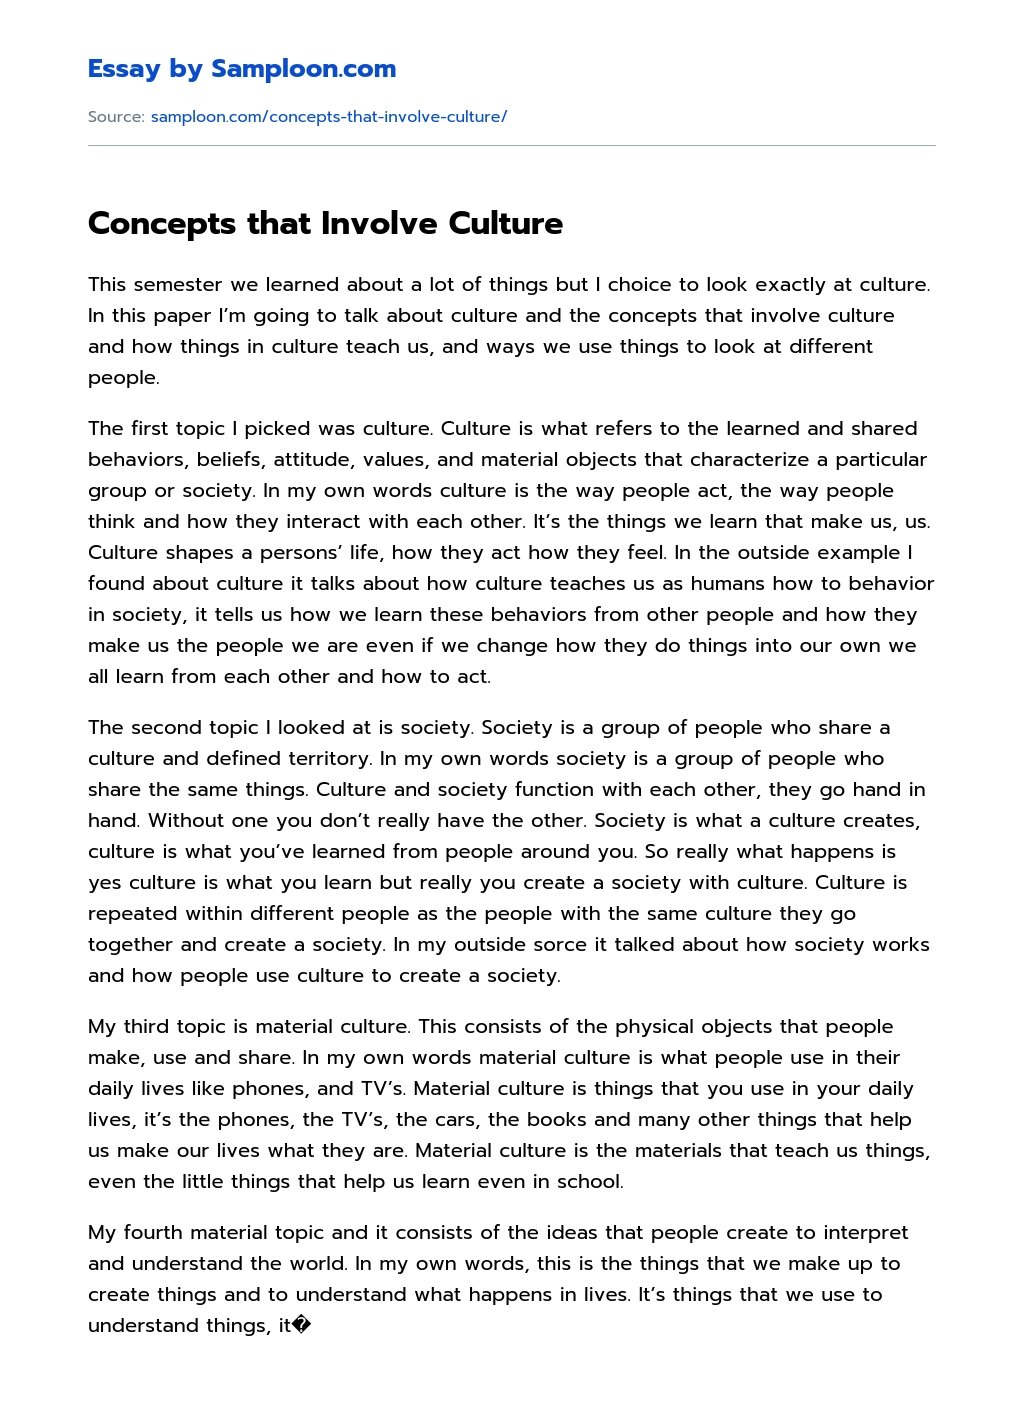 Concepts that Involve Culture essay